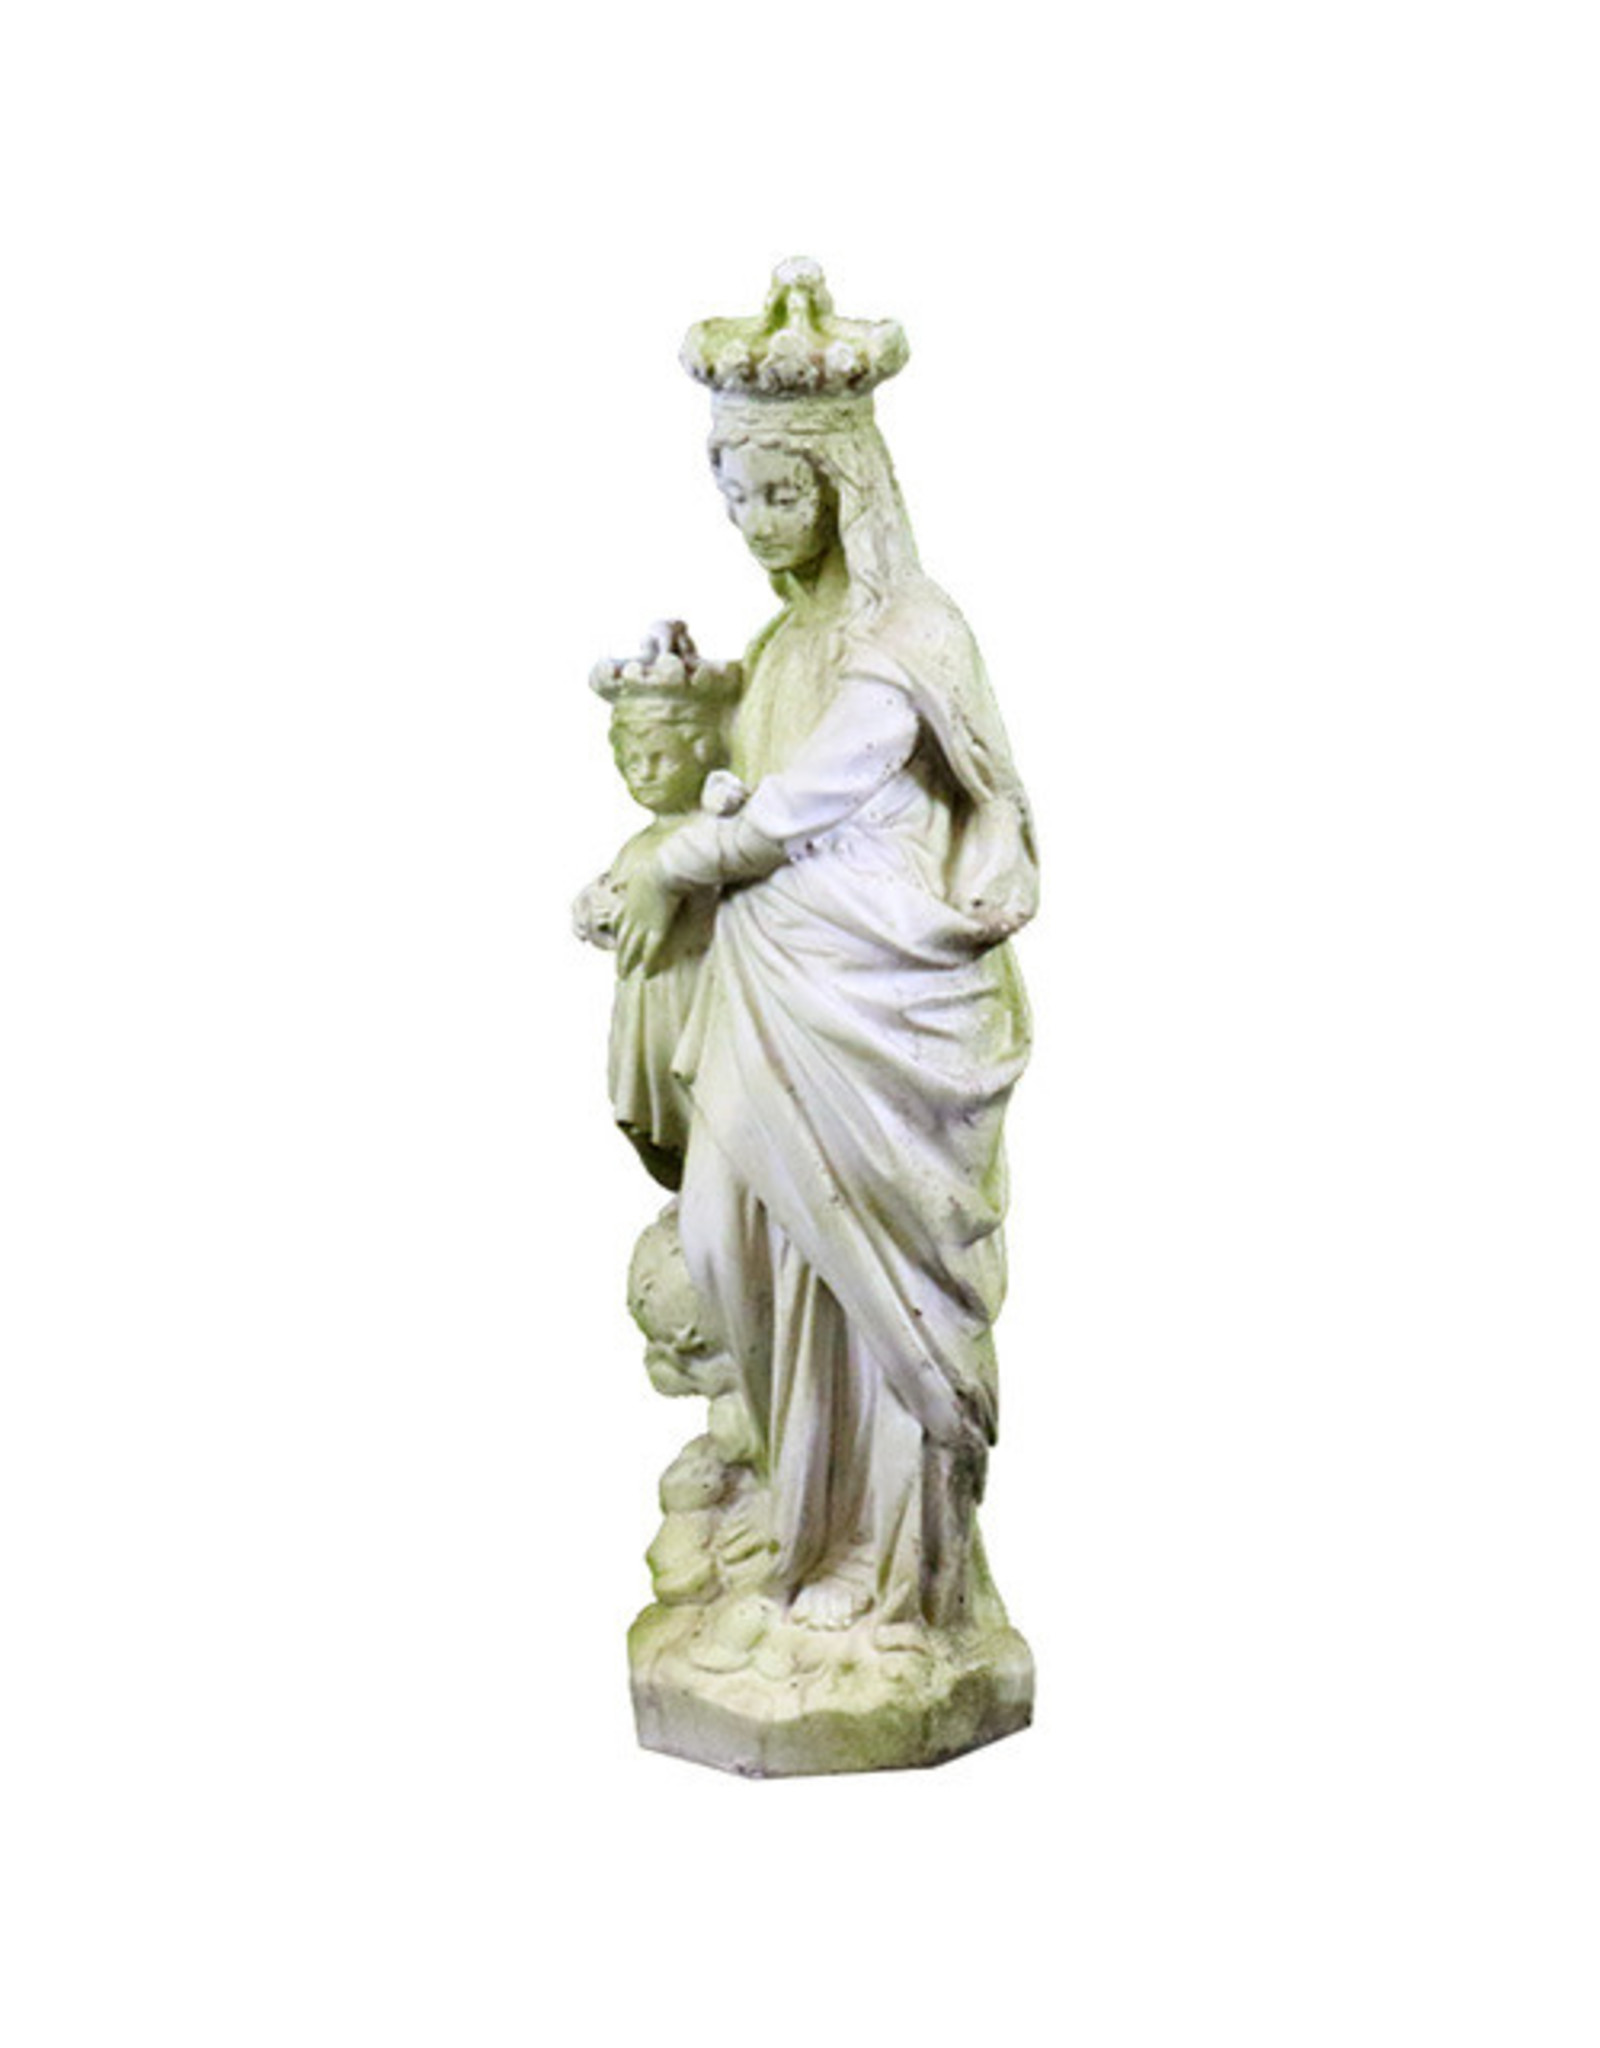 Statue - Queen & Child of Heaven (27")